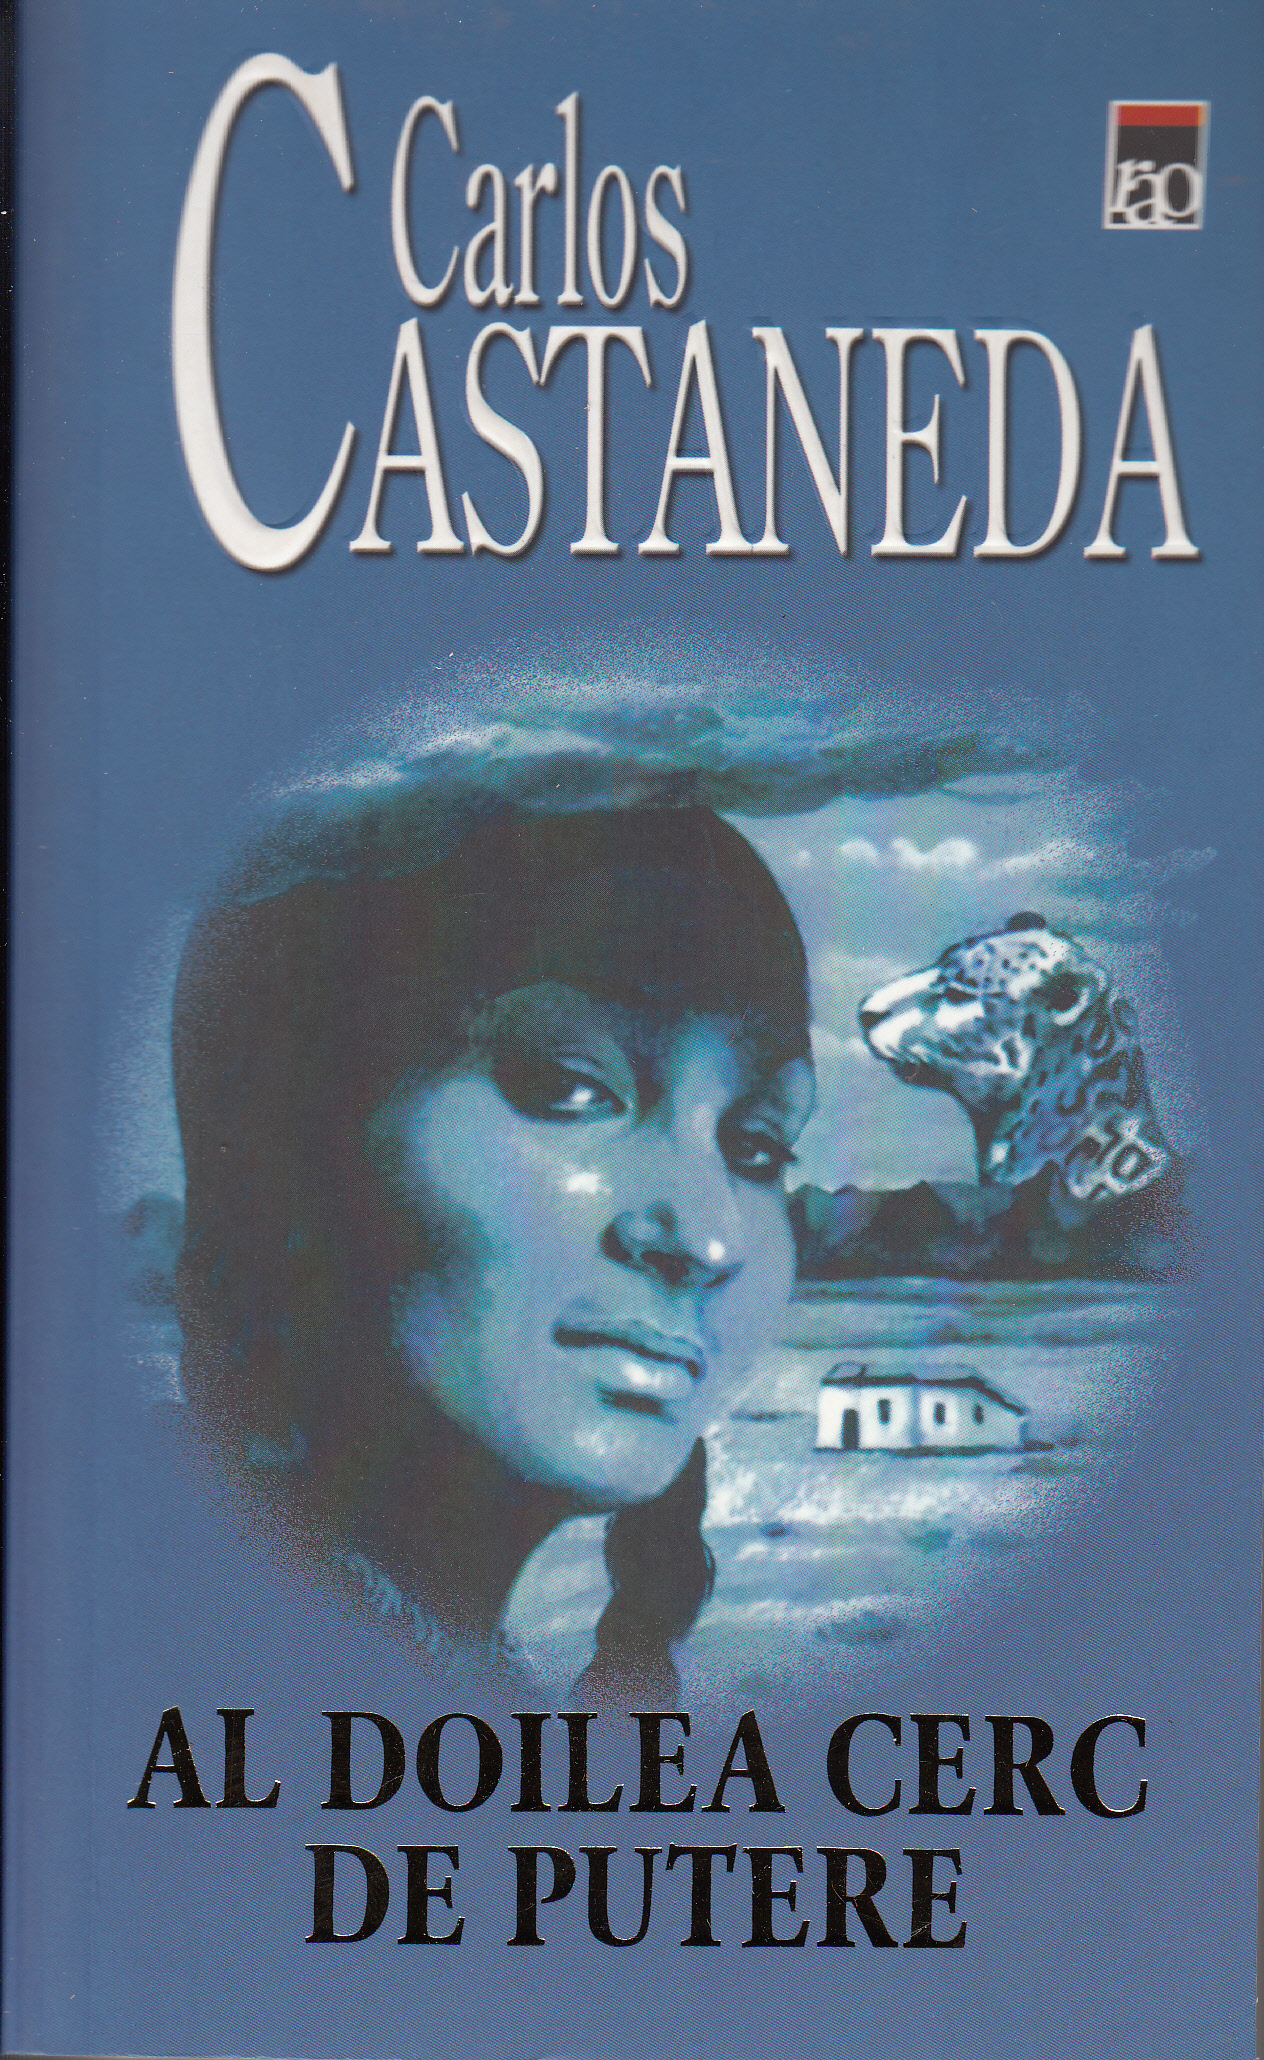 Al doilea cerc de putere | Carlos Castaneda